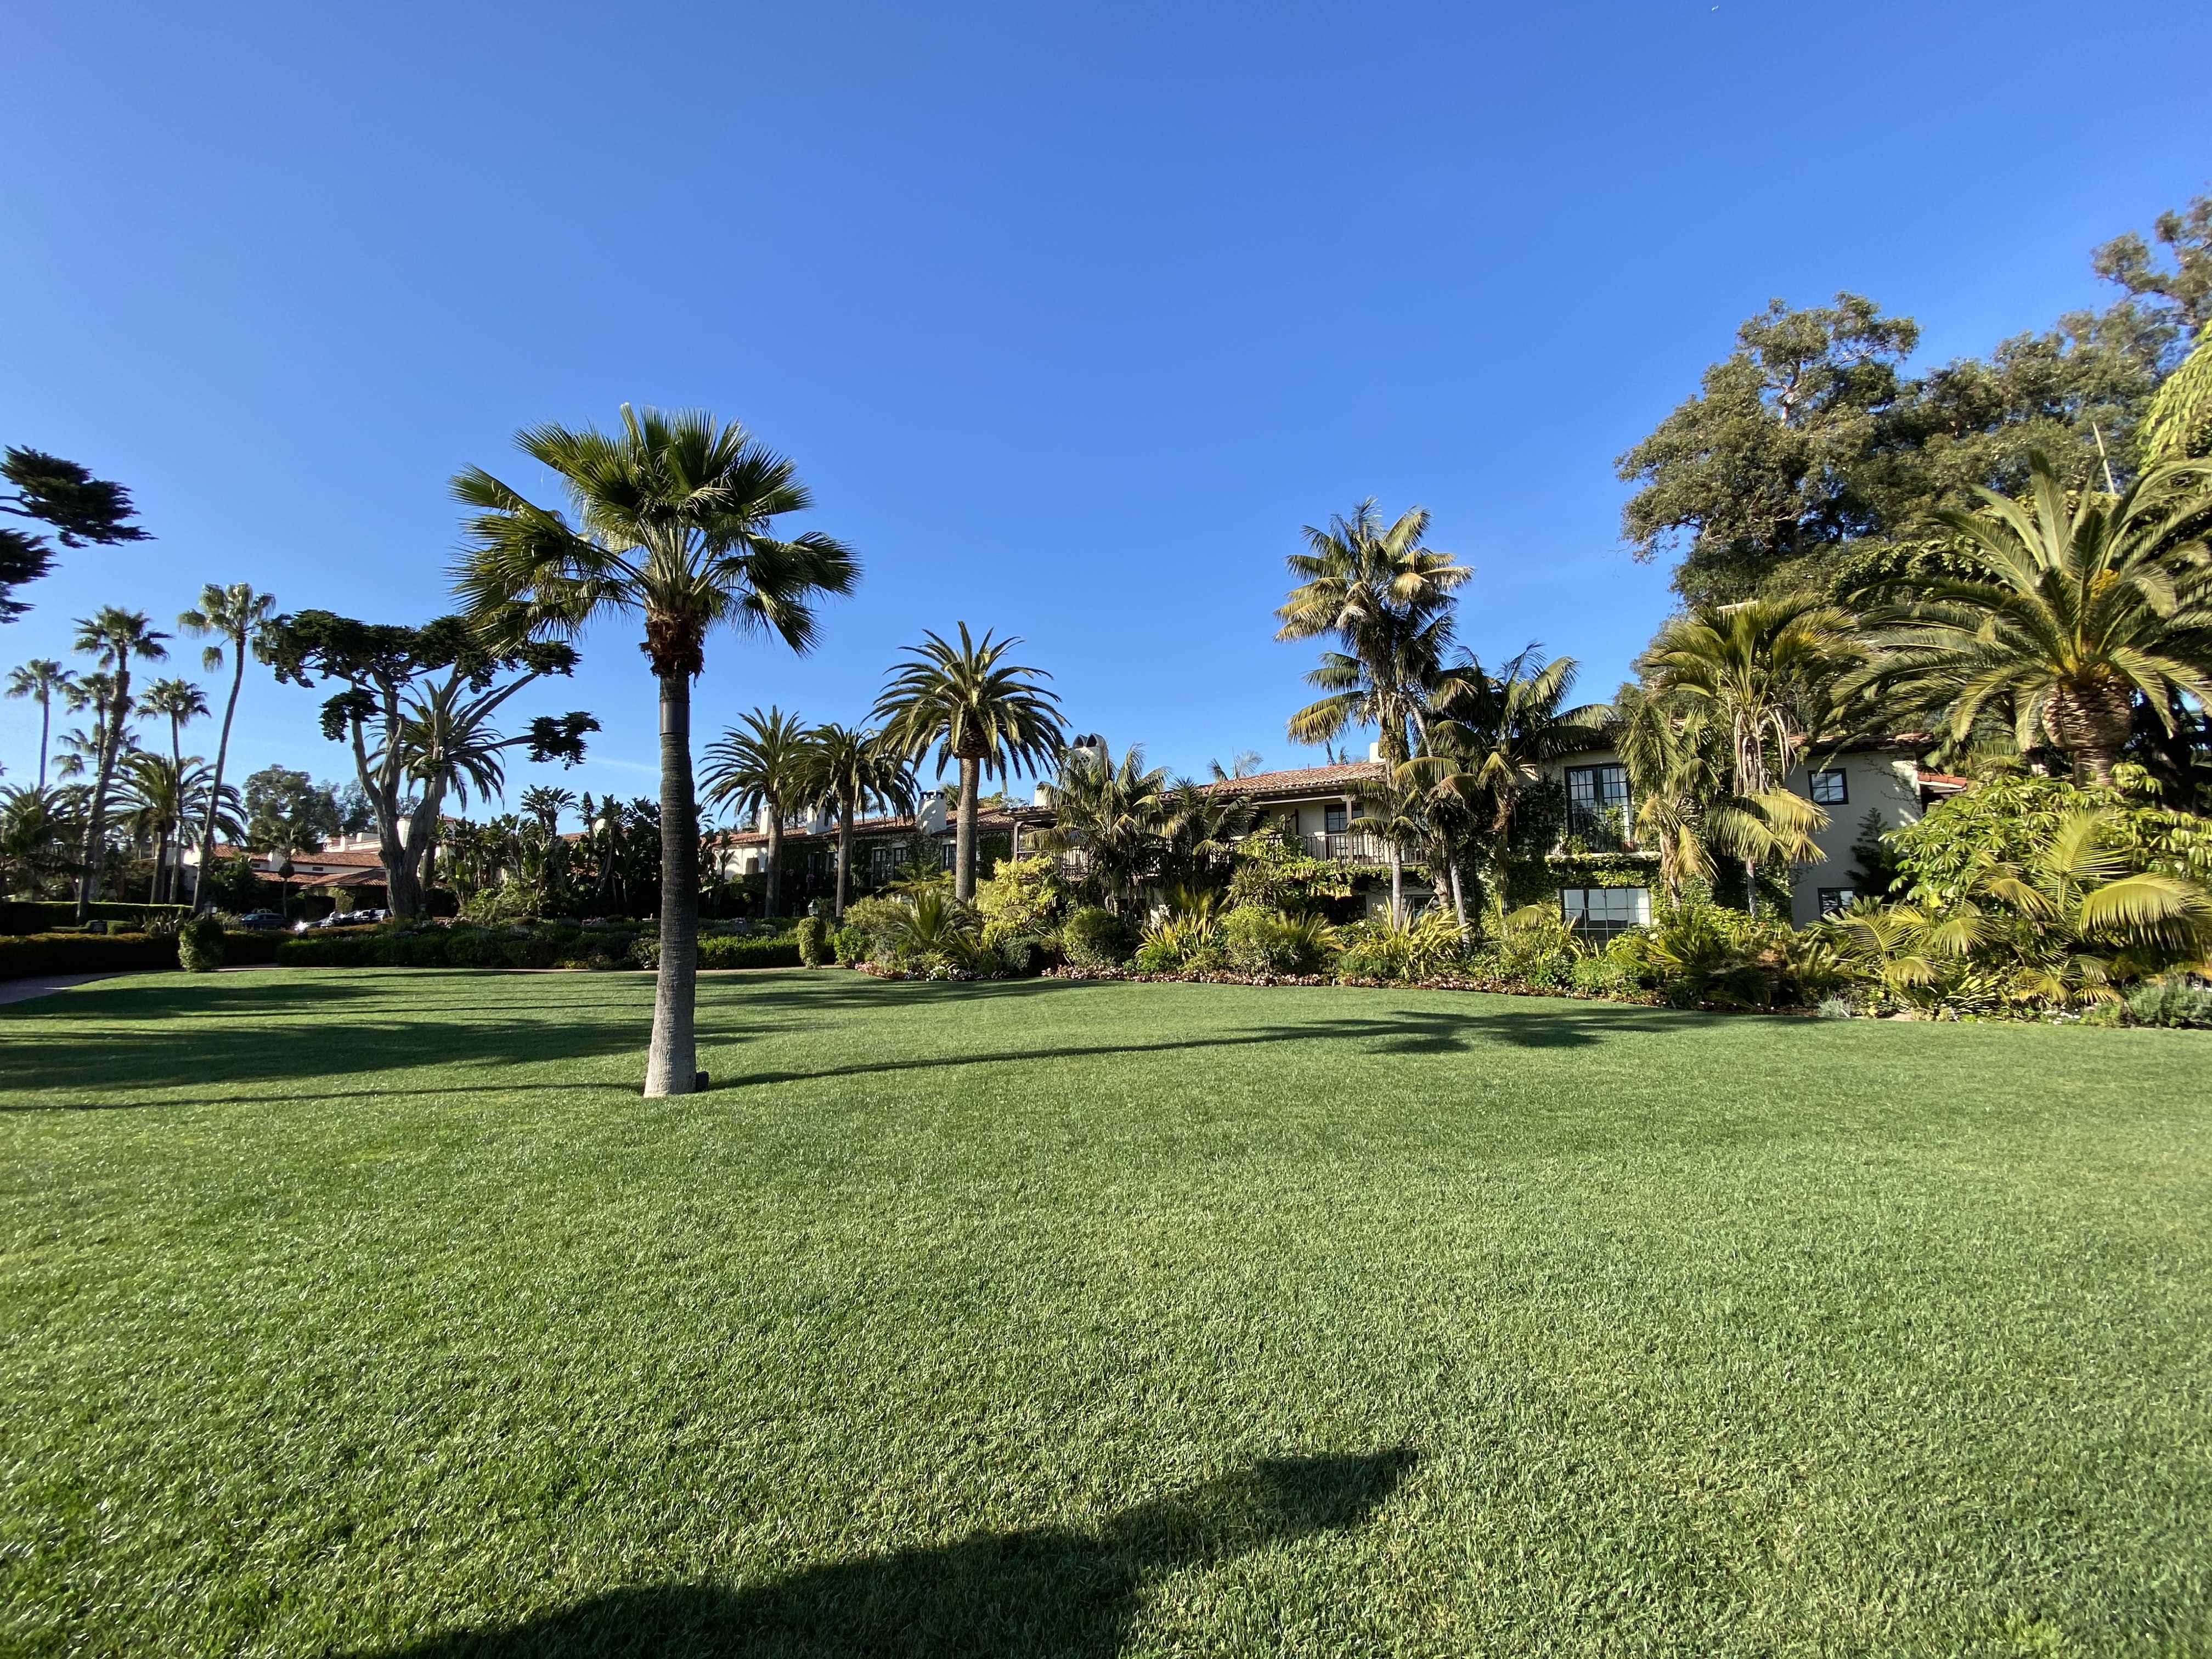 Four Seasons Resort The Biltmore Santa Barbara